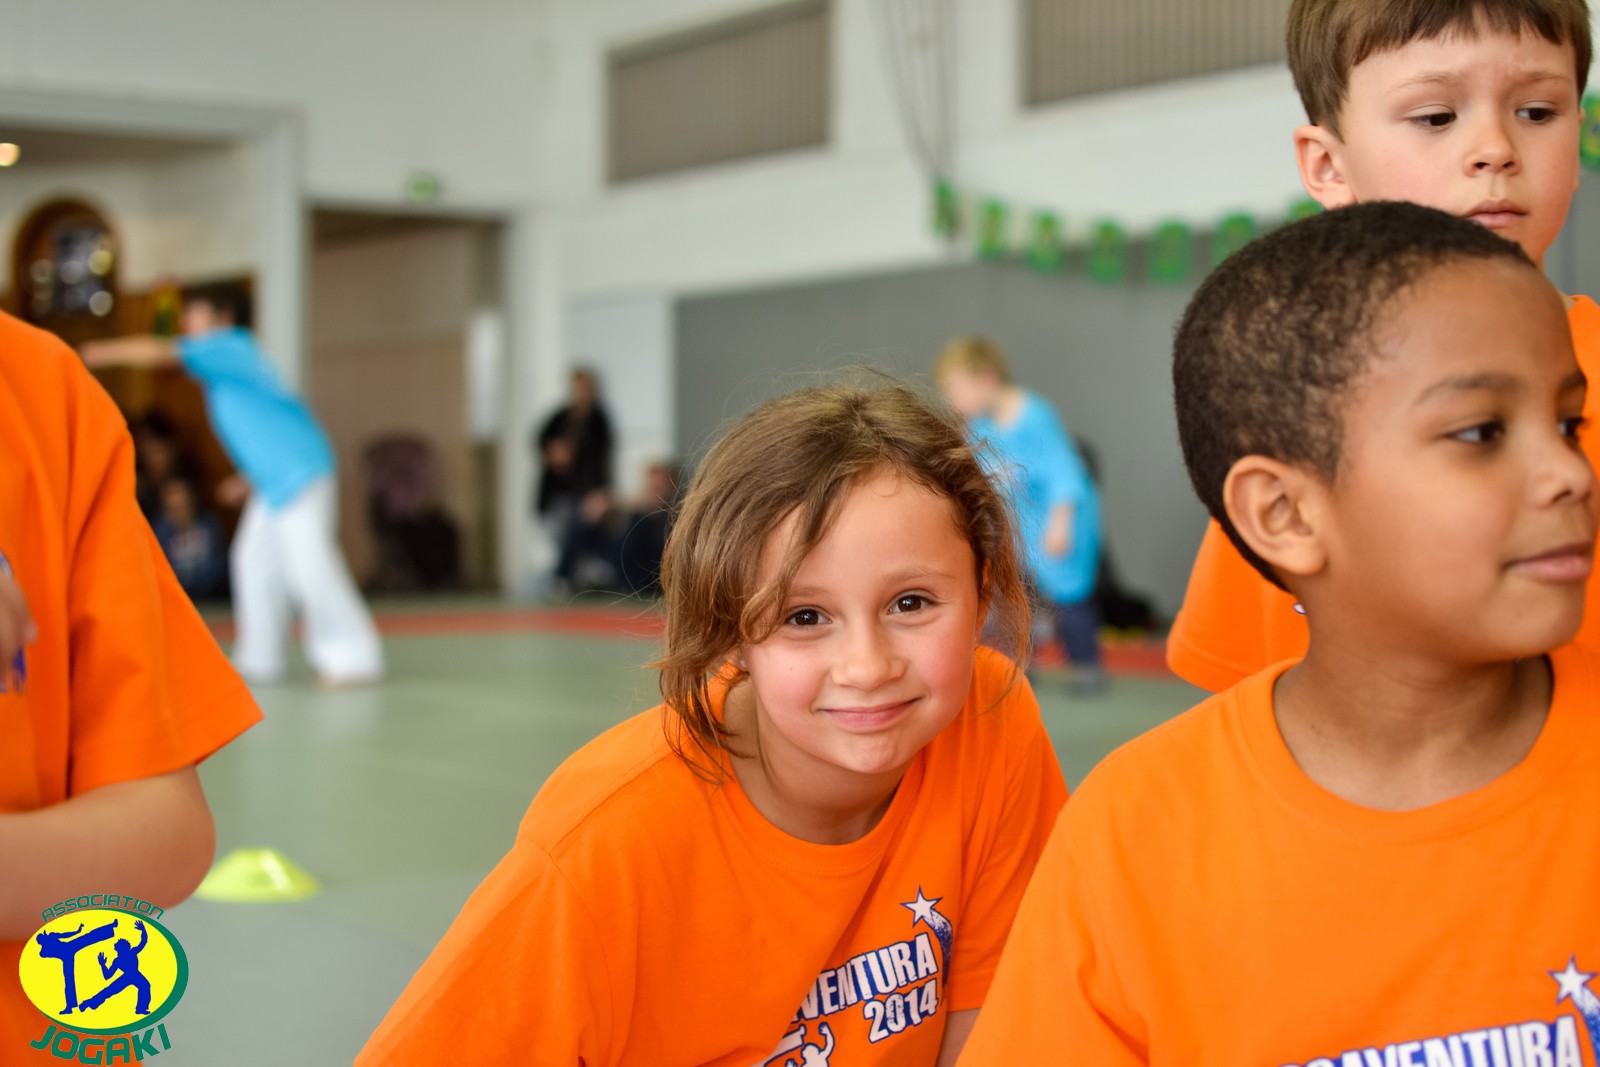 Ecole de Capoeira Paris Jogaki 2014 - tournoi jeux et epreuves sportives pour enfants jogaventura084 [L1600]